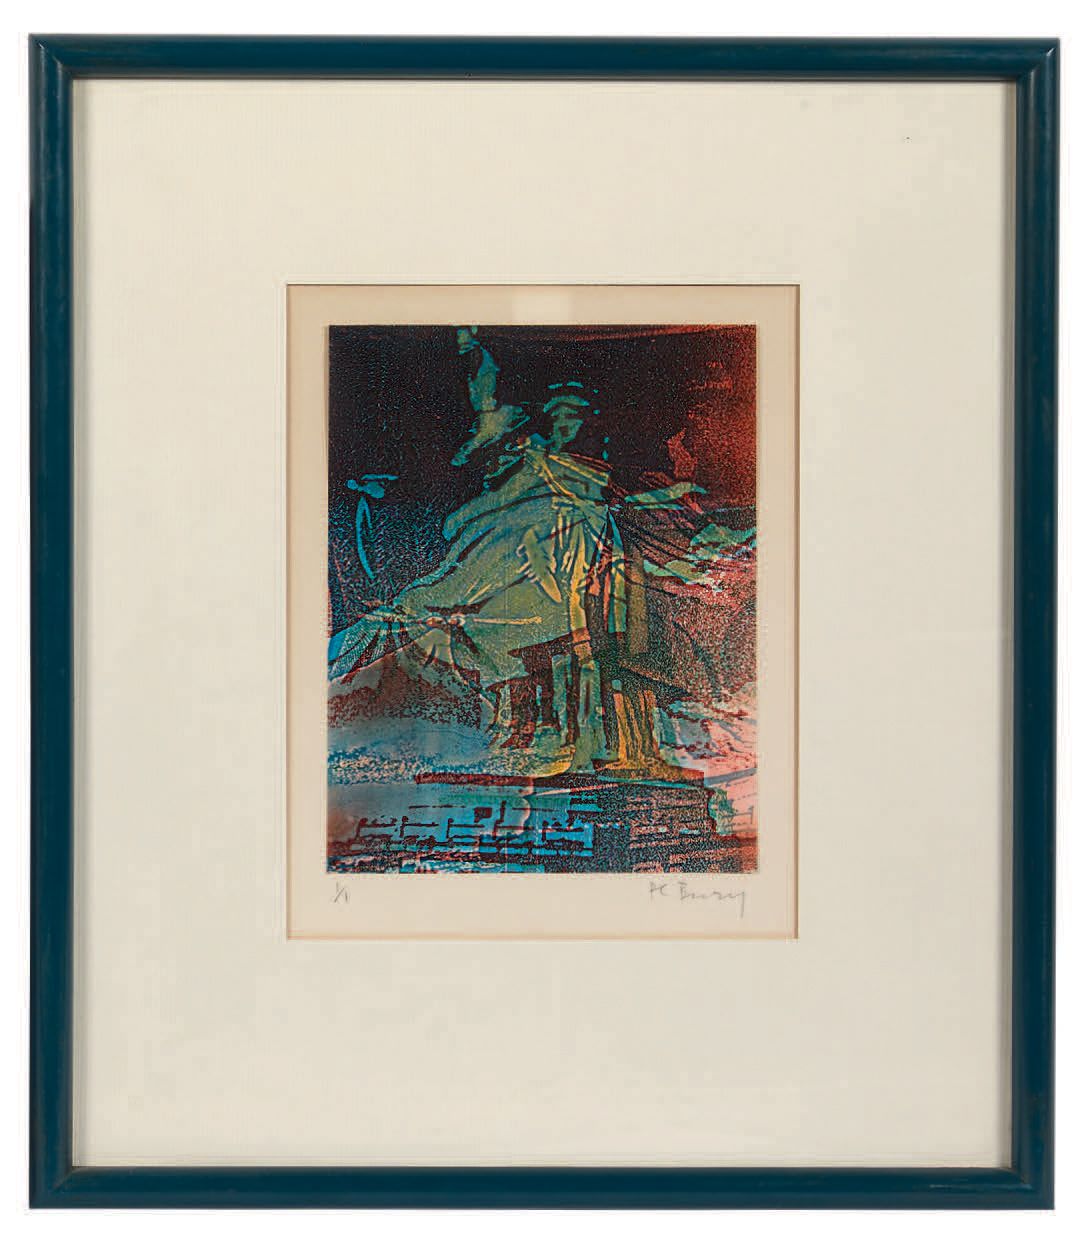 POL BURY (1922-2005) 自由女神像
彩色石版画，编号为1/1，右下方有签名。
17.5 x 13 cm。